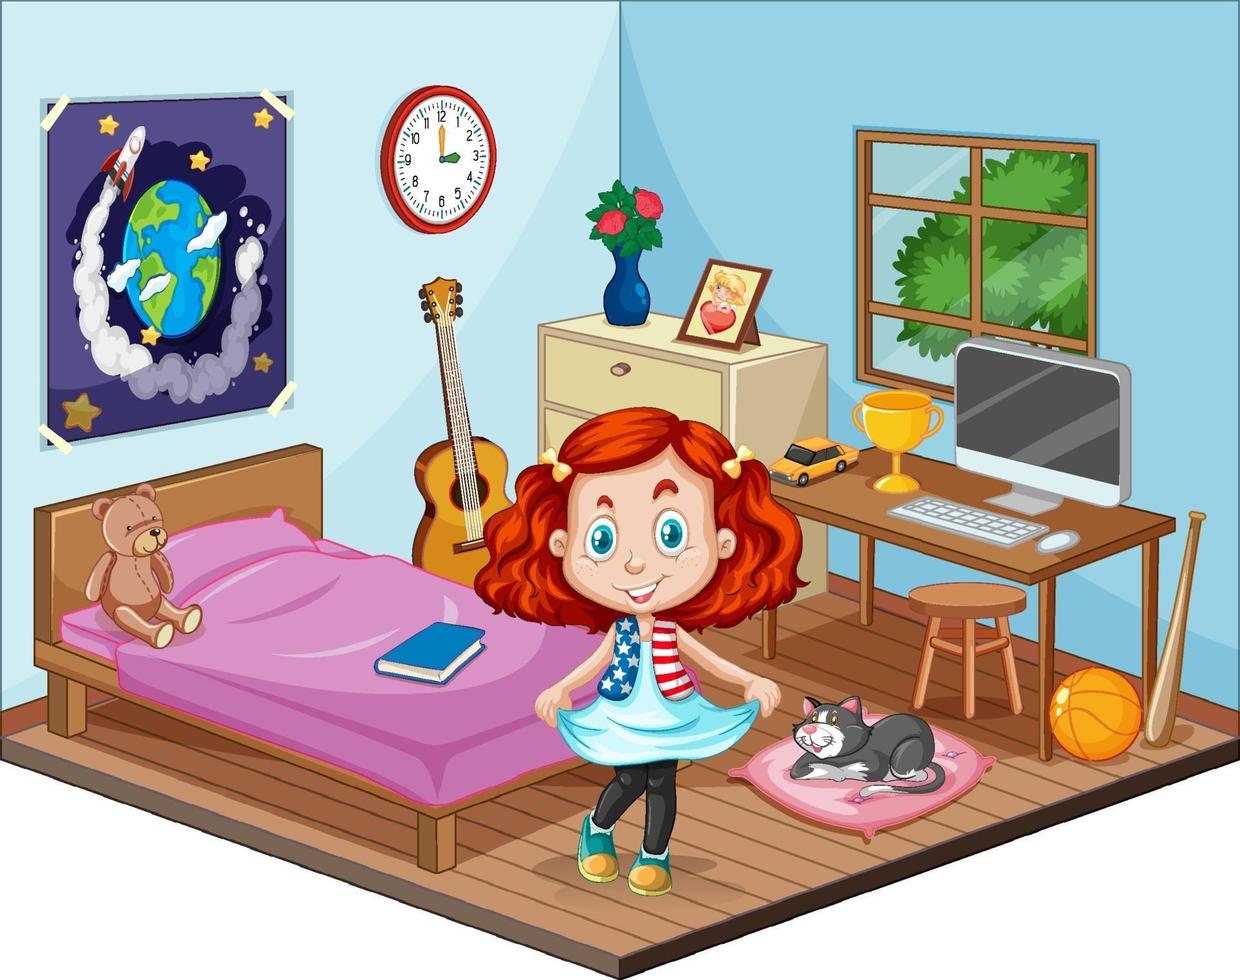 deel van slaapkamer van kinderscène met een meisje in cartoonstijl vector